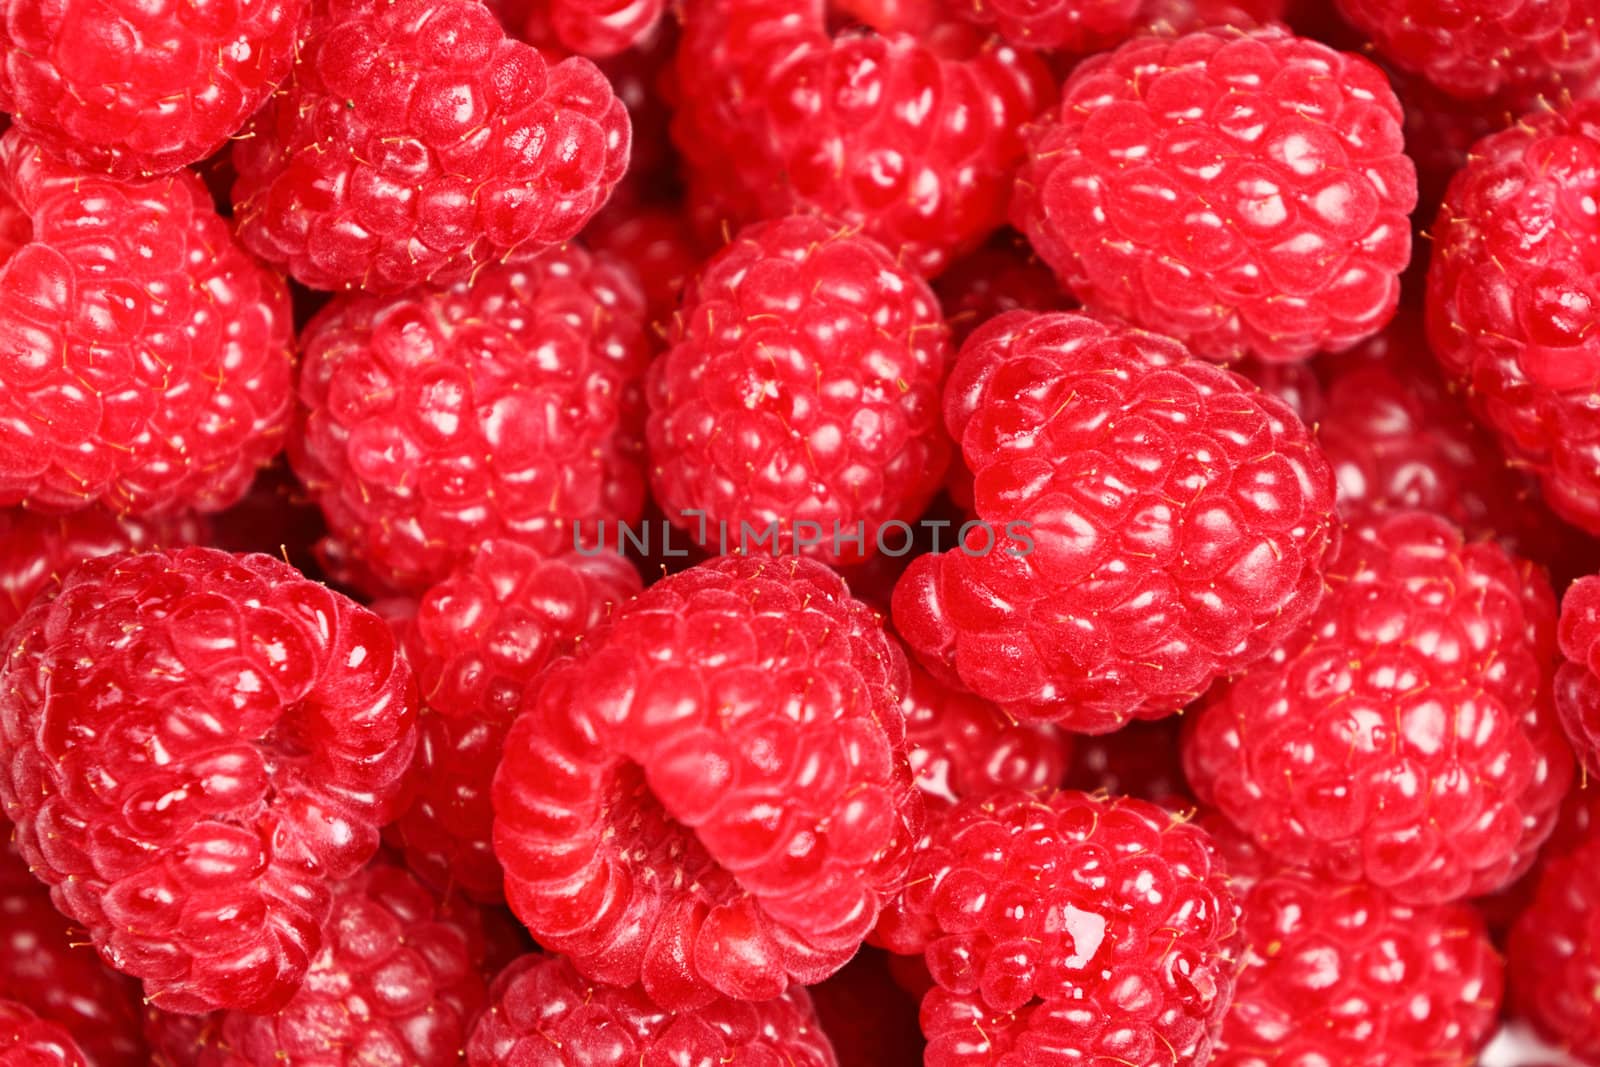 Raspberries - raspberry texture background by Maridav